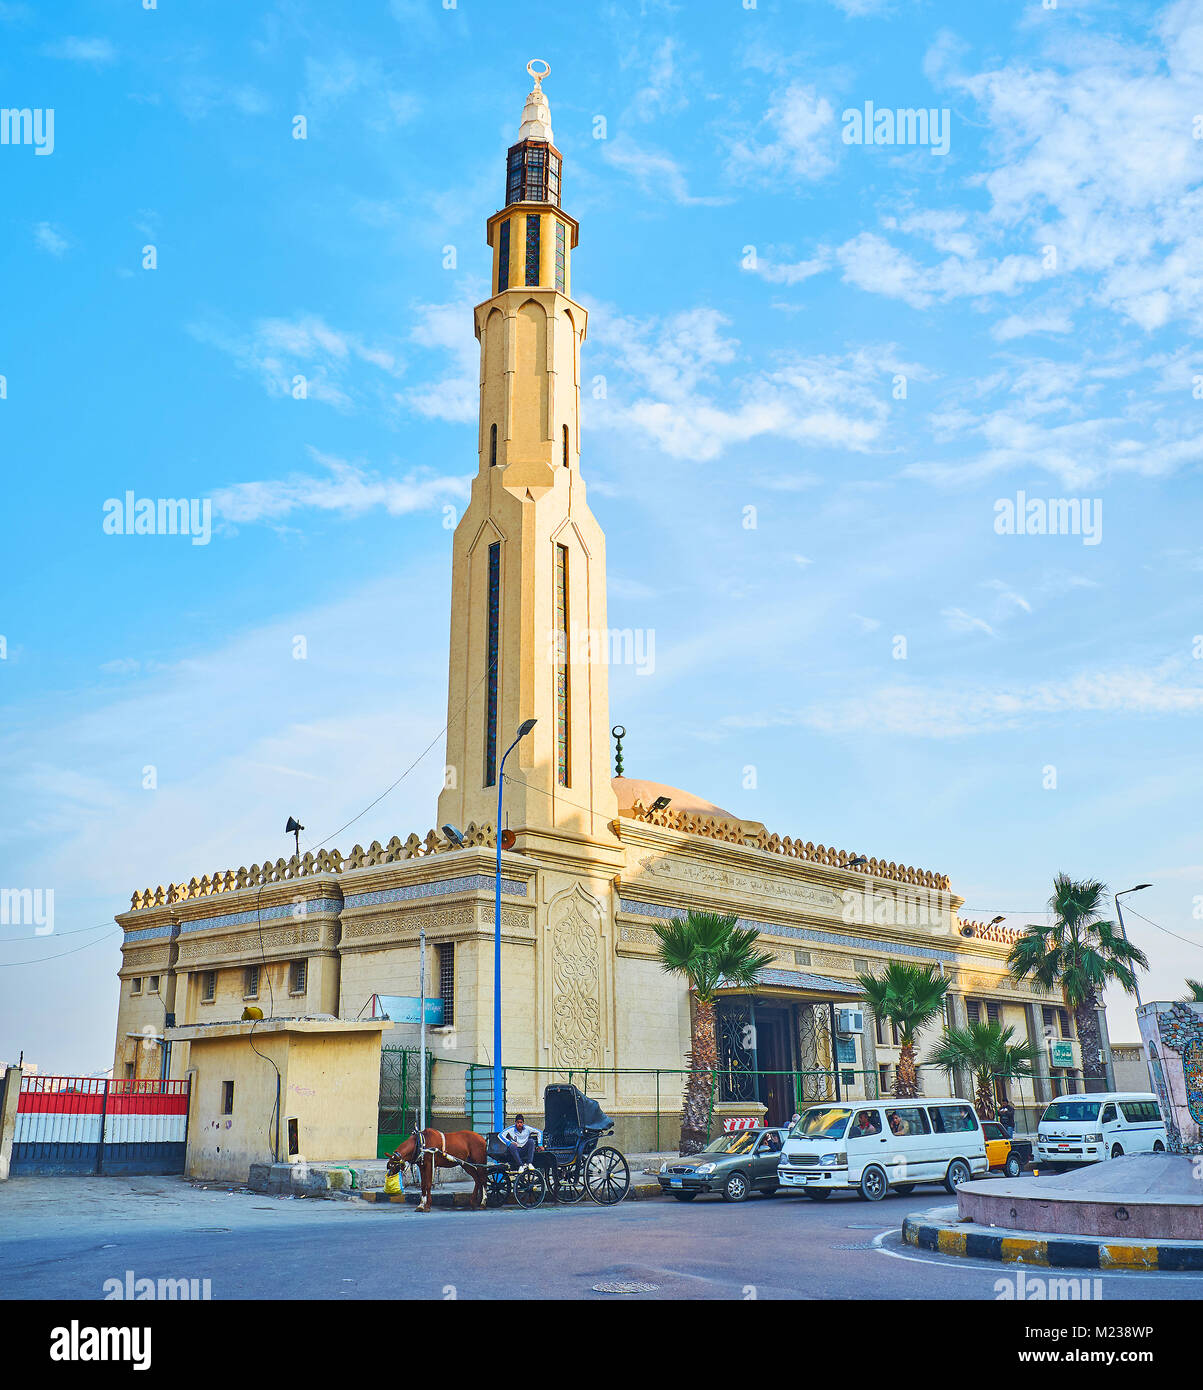 Alessandria, Egitto - 17 dicembre 2017: Manar El islam moschea si trova sulla Corniche embankment accanto al mercato del pesce e alla cittadella Qaitbay, su dicembre 1 Foto Stock